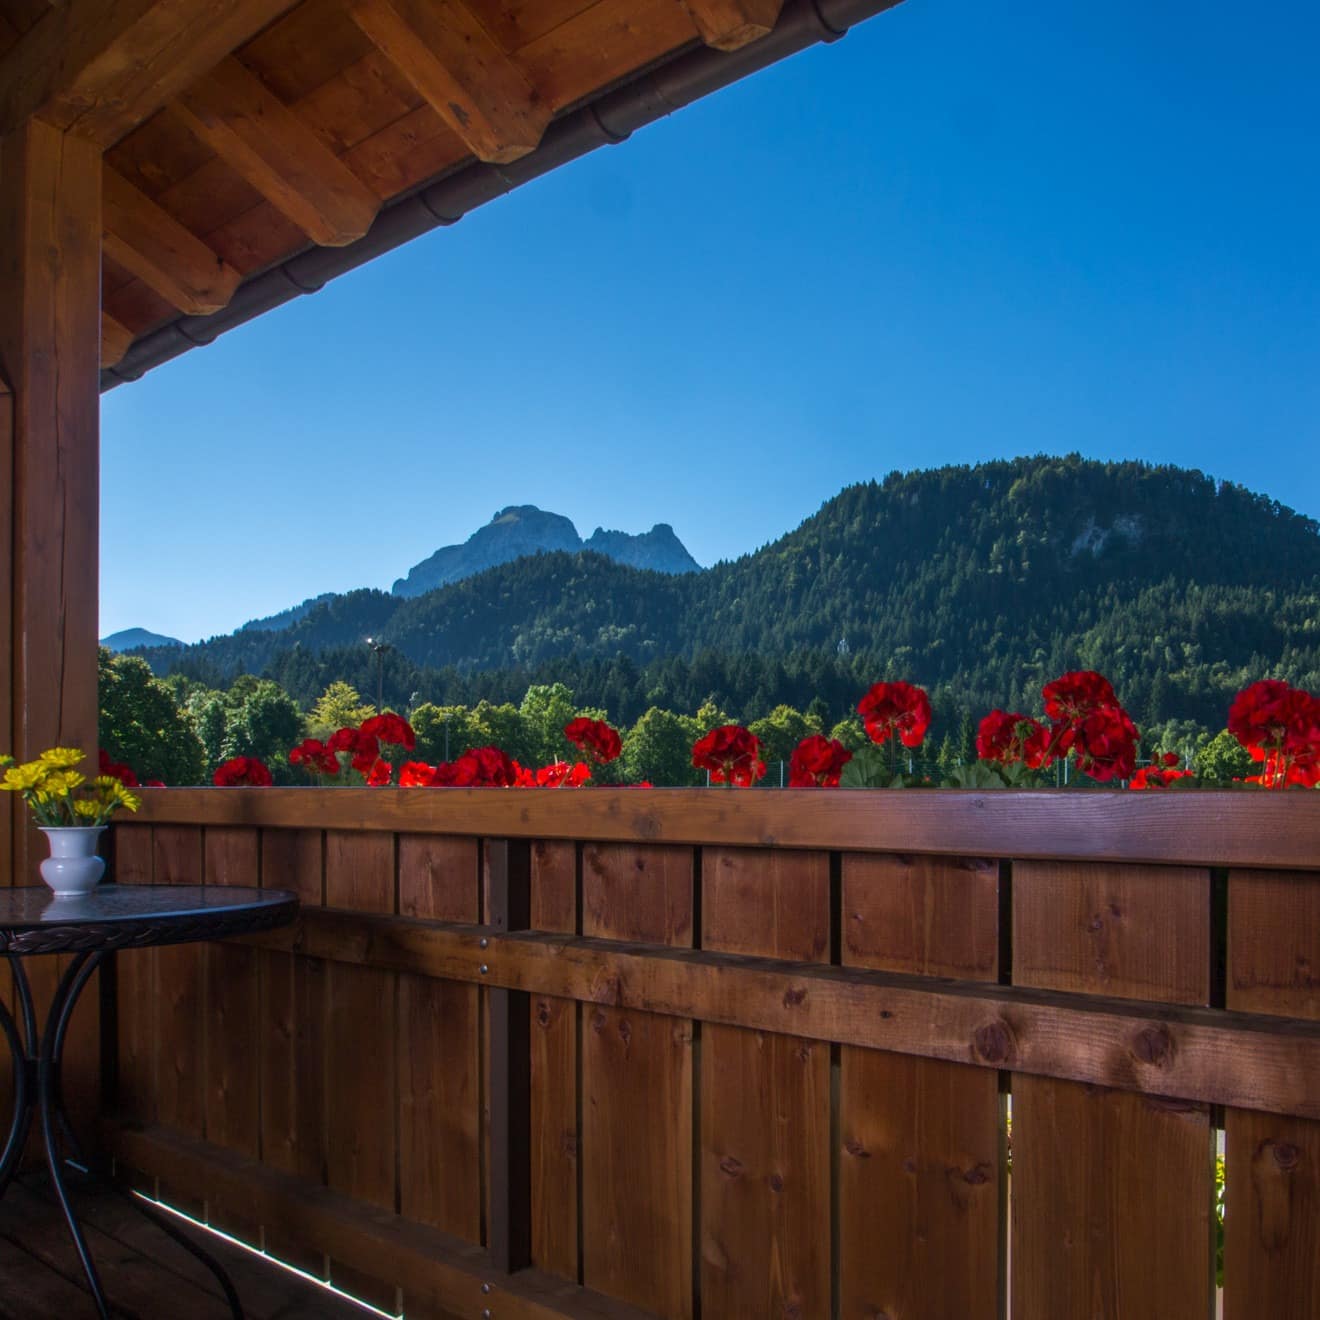 Blick vom Balkon einer Ferienwohnung in Füssen auf das bergige Umland, rote Blumen blühen in Blumenkästen am Balkon.